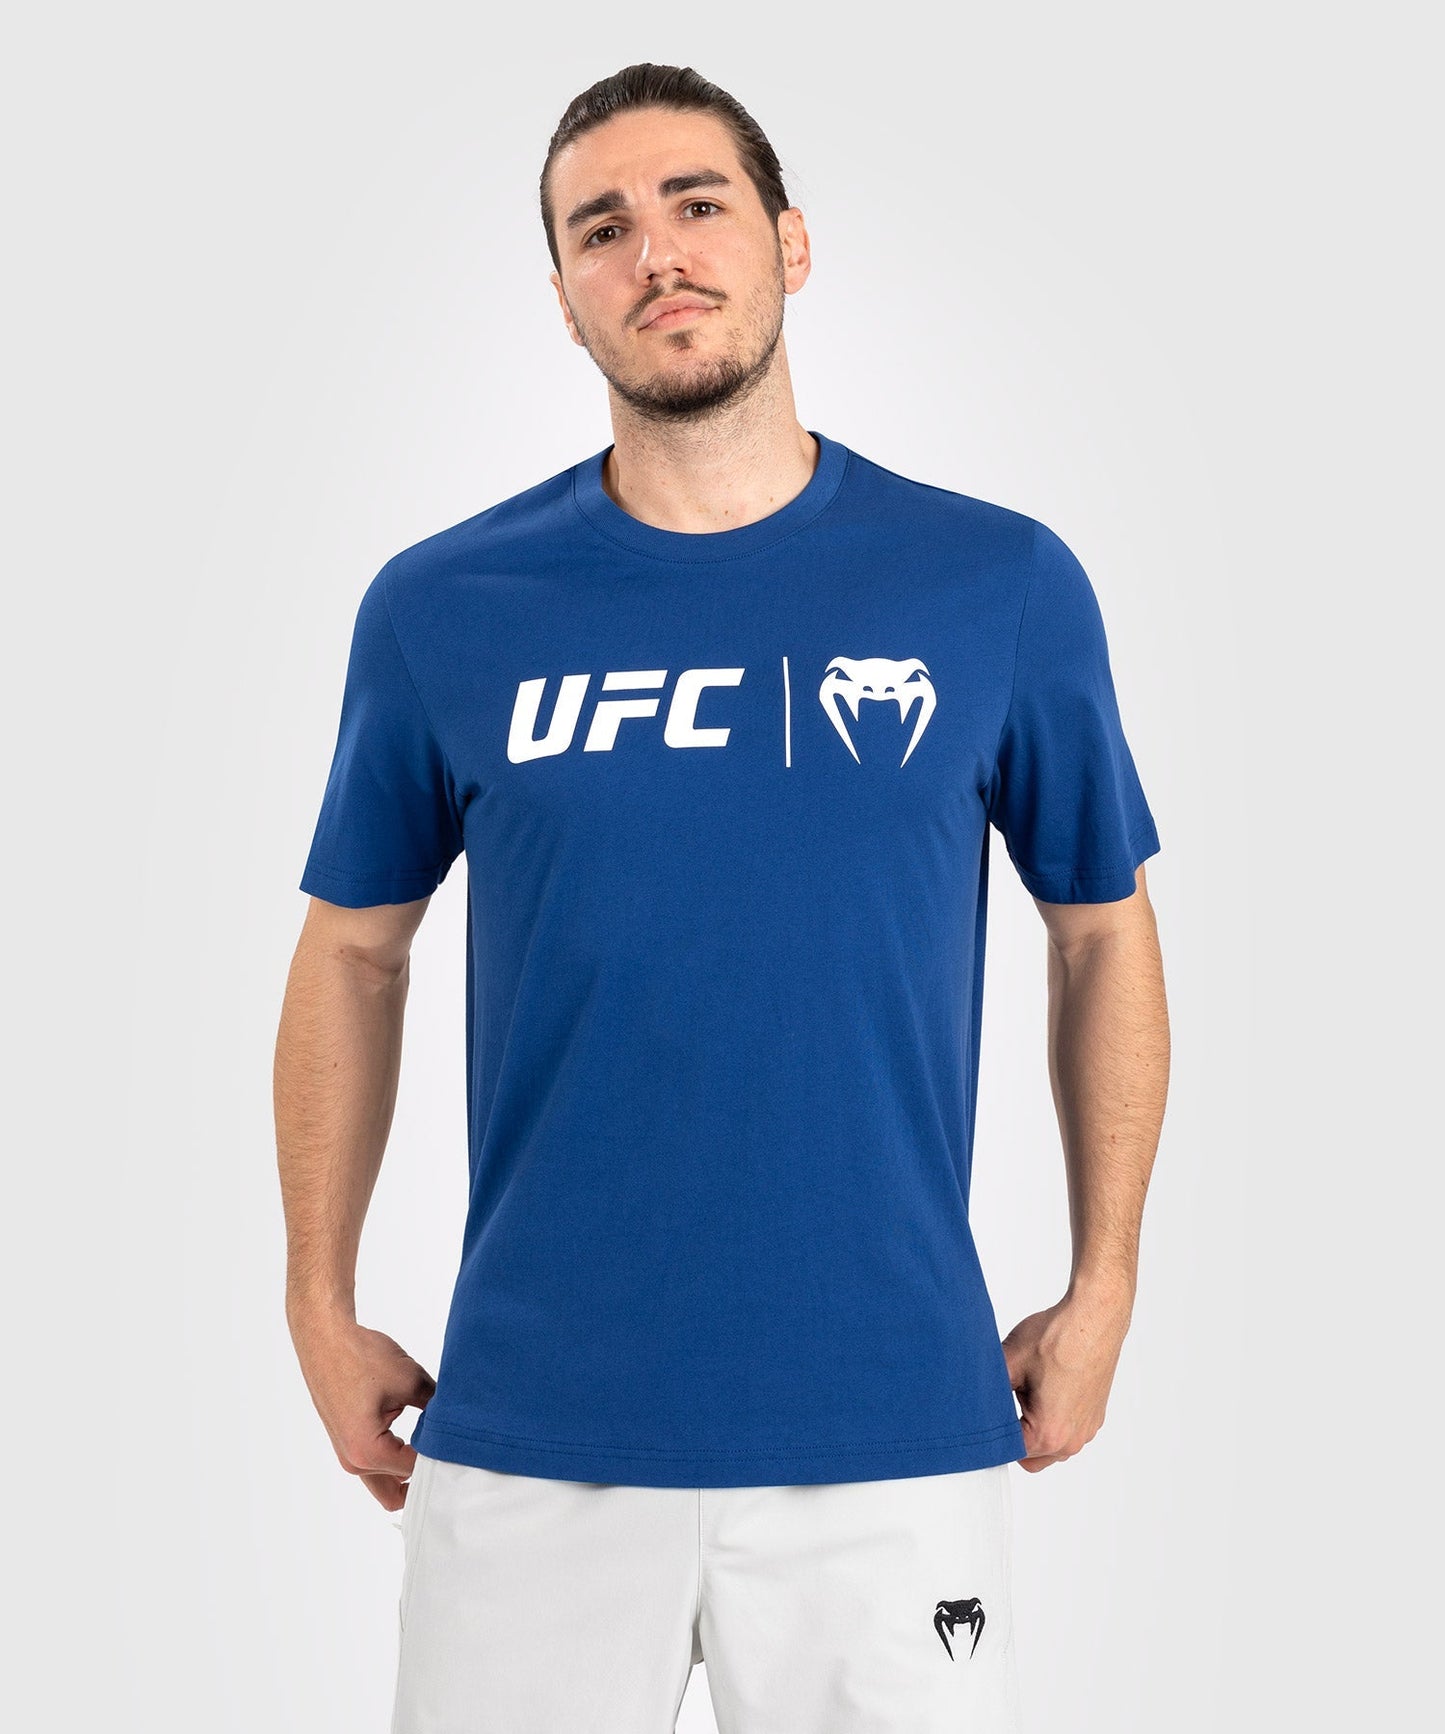 UFC Venum Classic  Camiseta - Azul Marino/Blanco